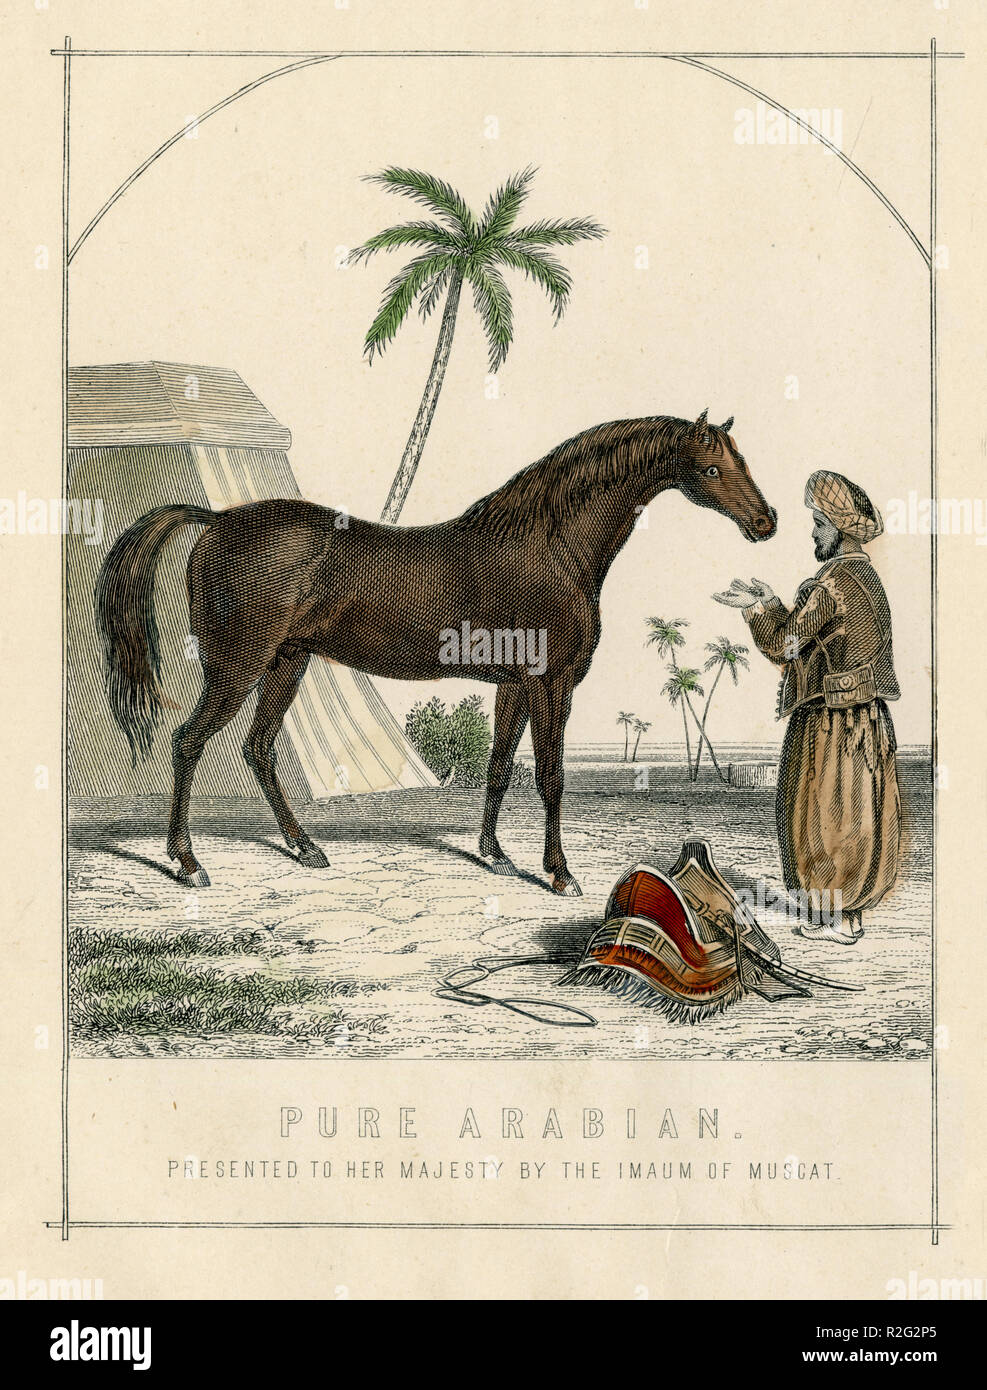 Arabian Horse: die "Reine" 1001. Ihrer Majestät der Imaum von Muscat', William Mackenzie vorgestellt Stockfoto